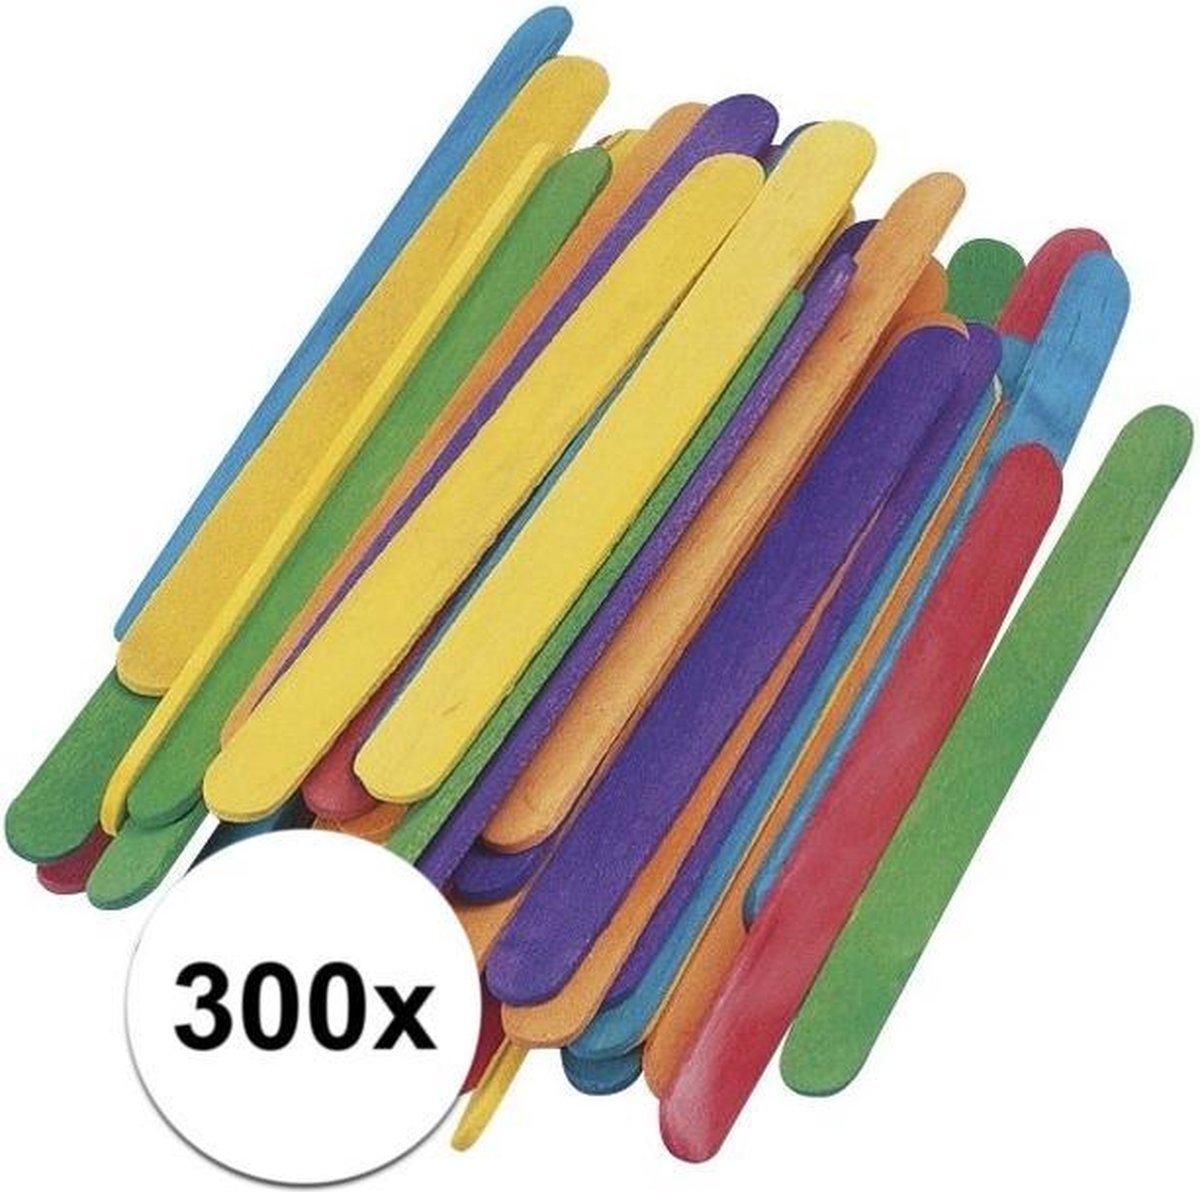 300 gekleurde ijsstokjes knutselhoutjes 5,5 cm - knutselstokjes - hobby houtjes artikelen